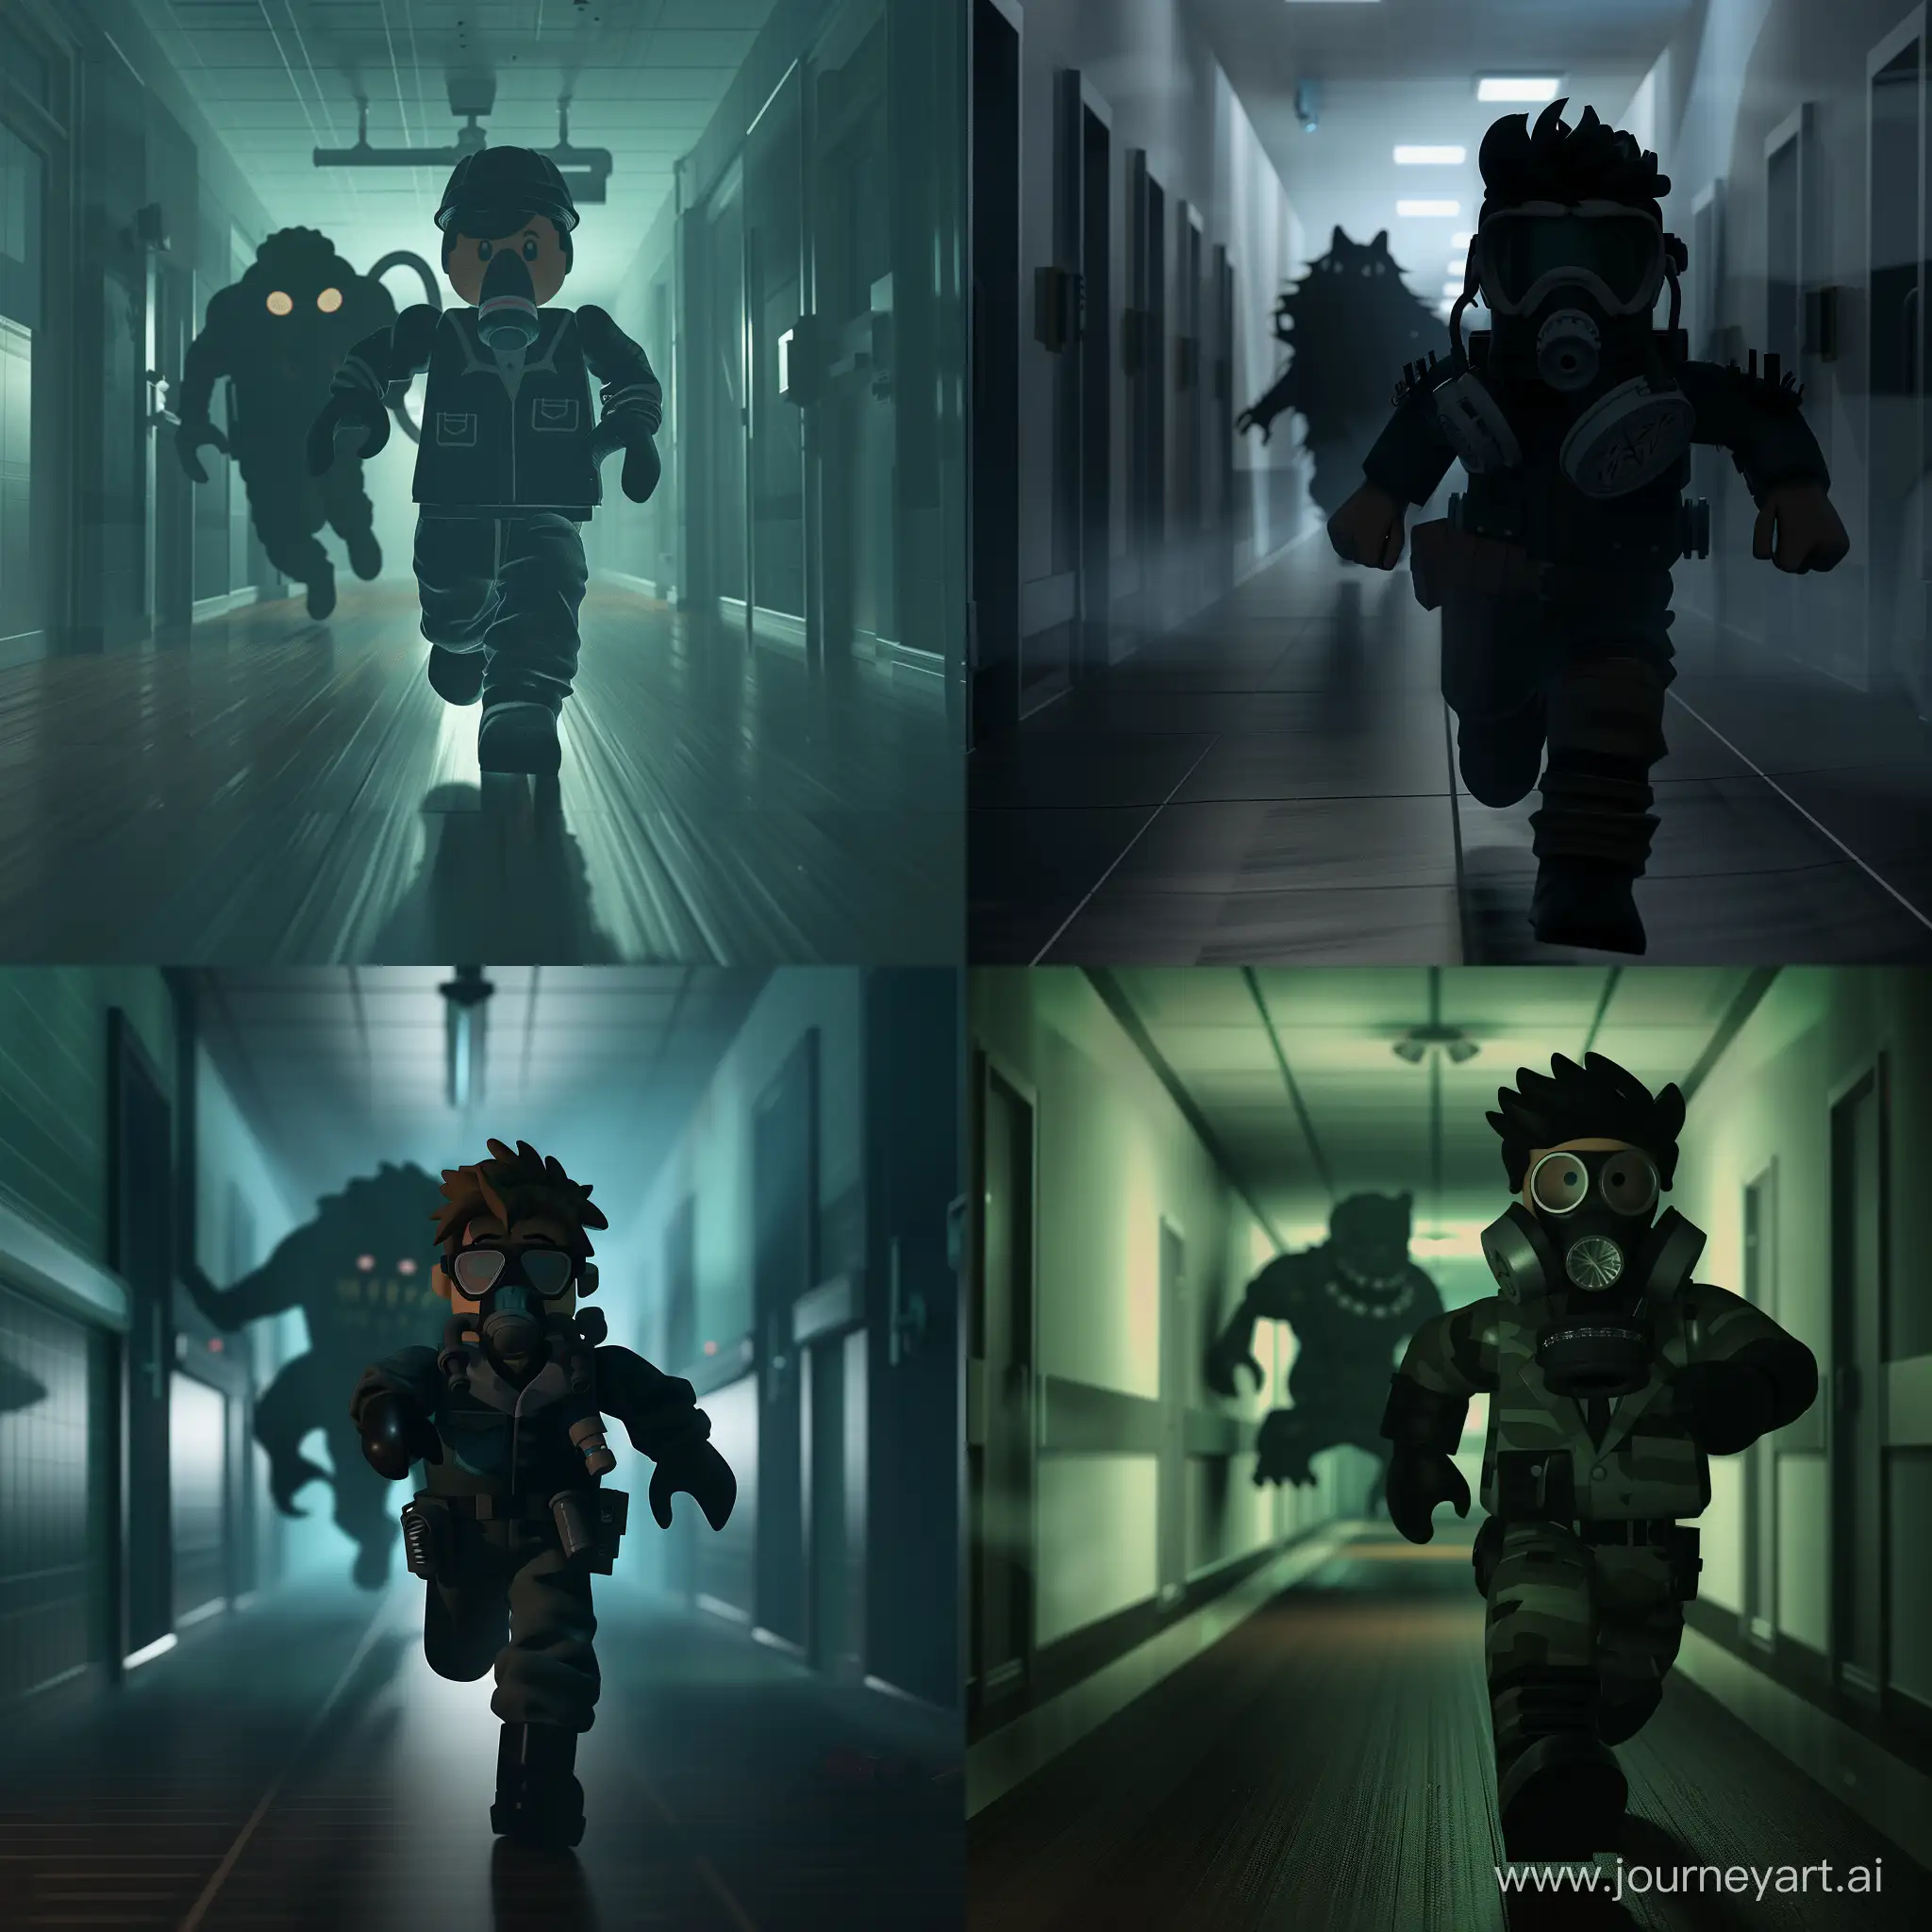 Scientist-Roblox-Avatar-Evading-SCP173-in-Dark-Hallway